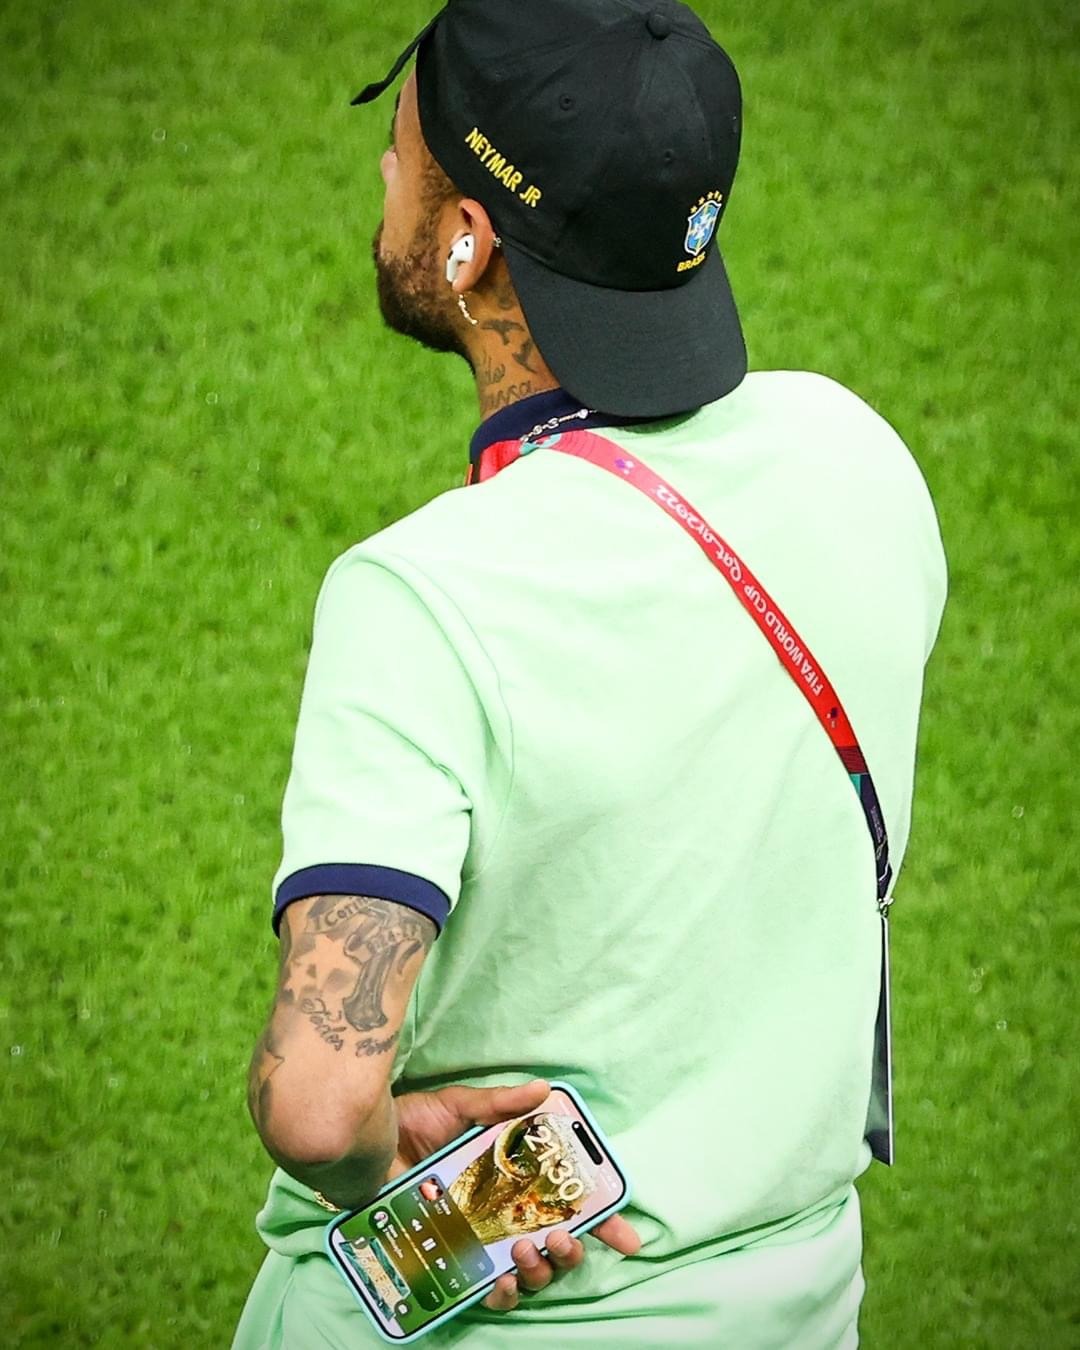 Neymar buồn là điều không hay khi một trong những cầu thủ xuất sắc và yêu thích nhất thế giới phải đối mặt với những cảm xúc trái ngược. Hãy tìm hiểu nguyên nhân và ủng hộ Neymar để anh sớm vượt qua khó khăn và trở lại sân cỏ với phong độ tốt nhất.